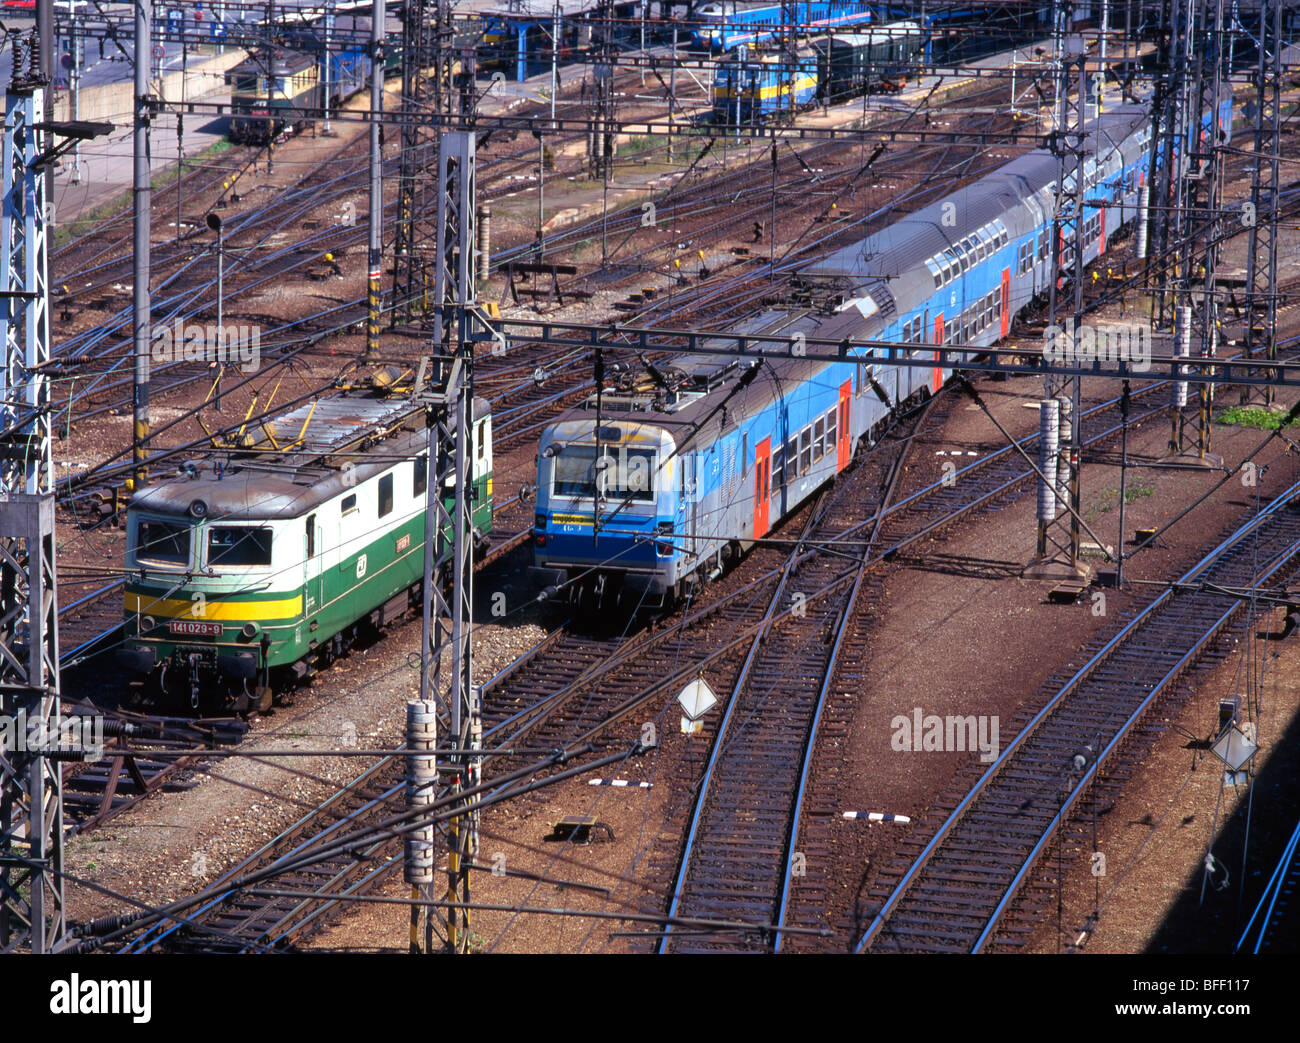 Praga, Repubblica Ceca. I treni su piste al di fuori di Hlavni nadrazi / stazione principale Foto Stock